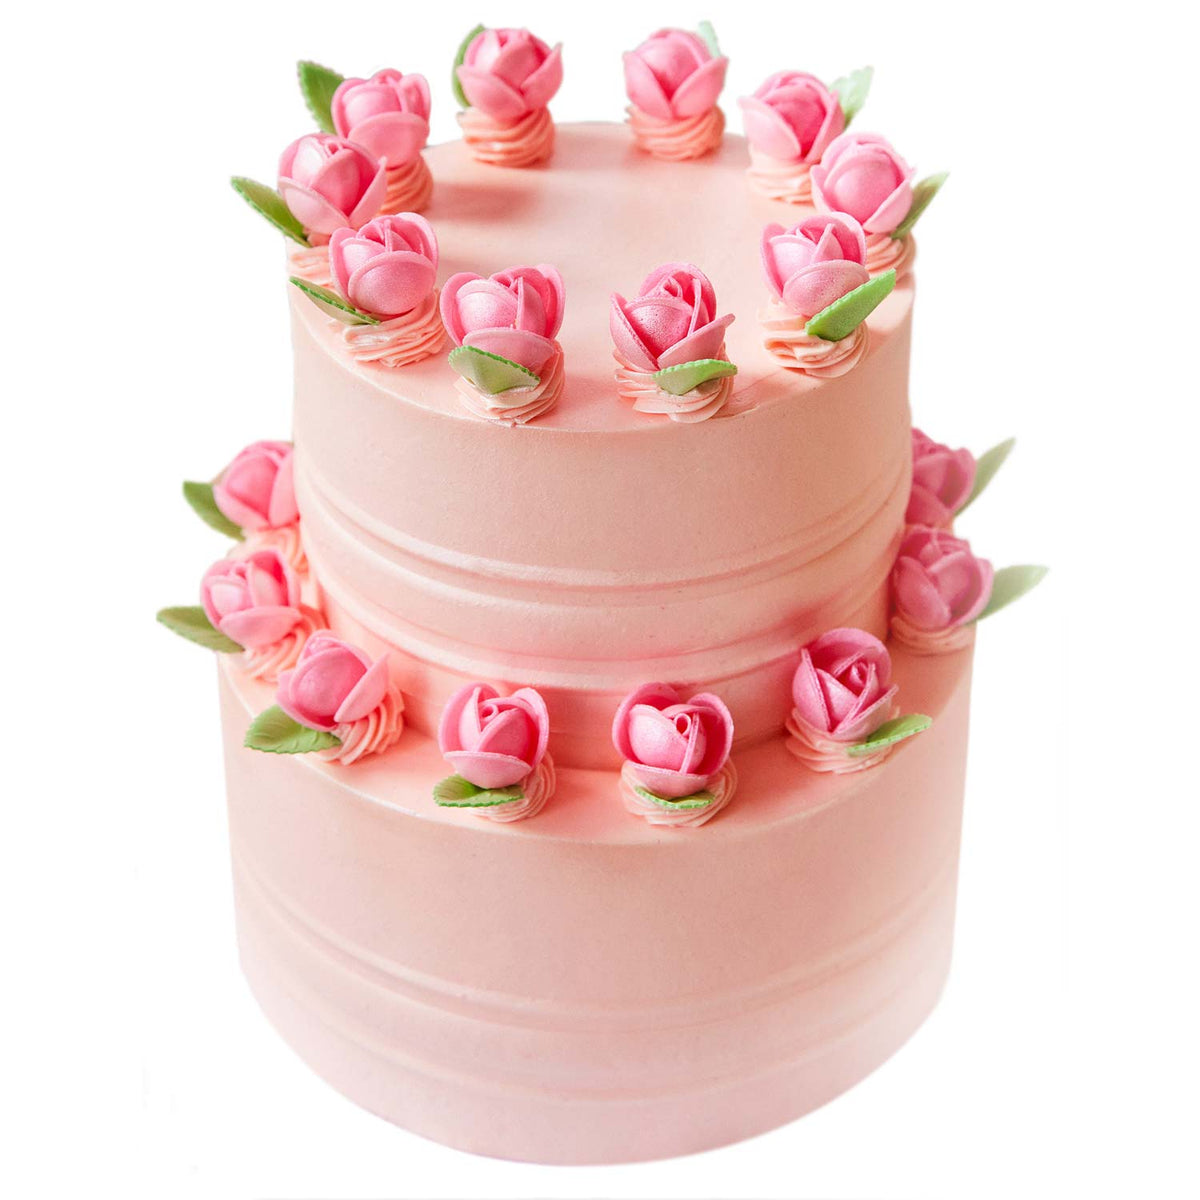 2 Layer Floral Cake | Layer Cake | Designer Cake | Yummy Cake